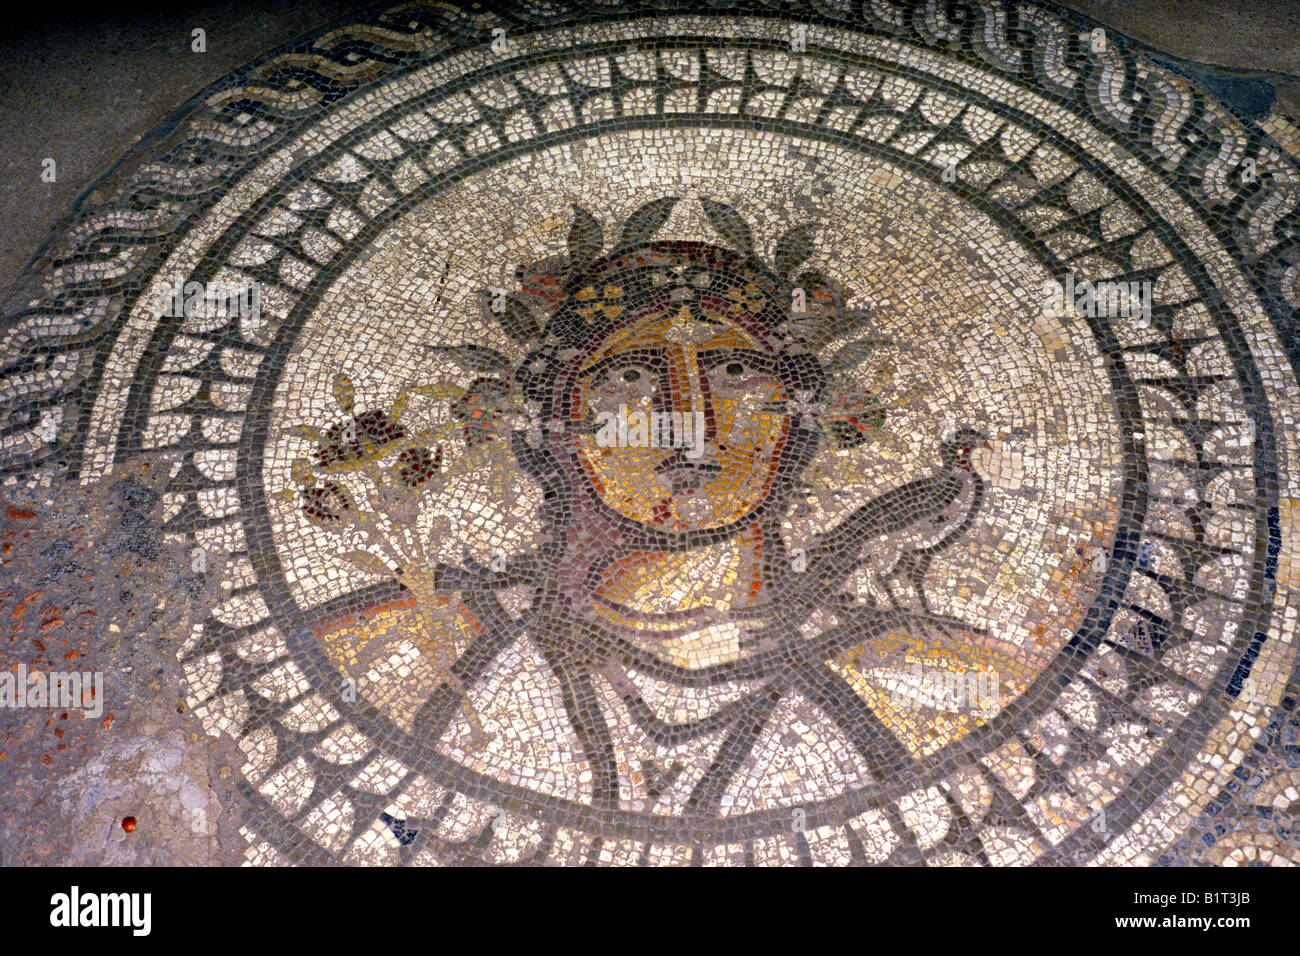 Römisches Mosaik Britanniens Museum Cirencester Mosaiksteine England Gloucestershire UK Estrich Großbritannien Stockfoto